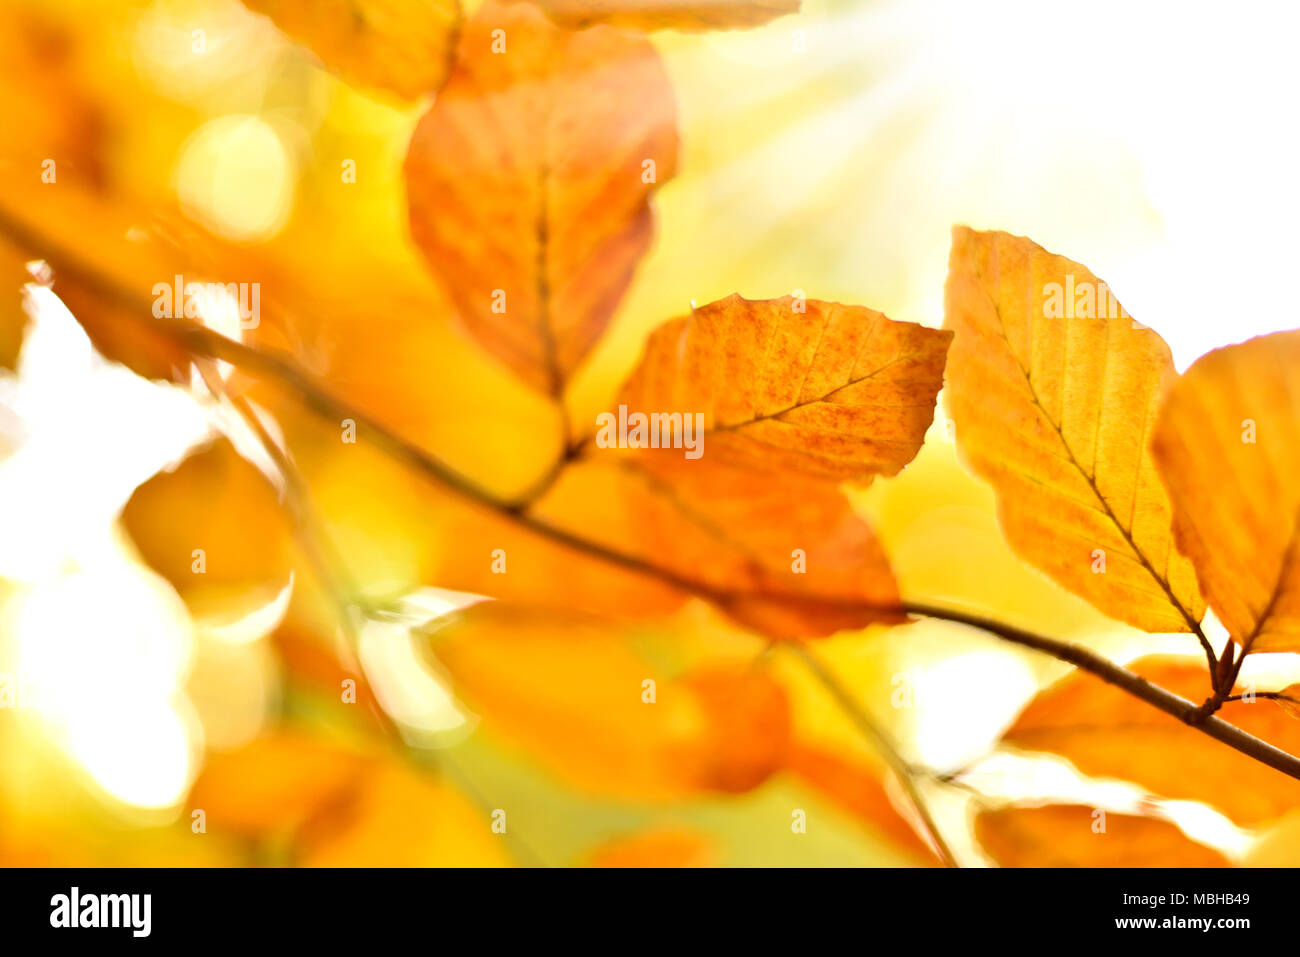 Les feuilles d'automne ou le feuillage avec arrière-plan flou et copiez l'espace. Feuilles de hêtre, nature de couleur orange. Banque D'Images